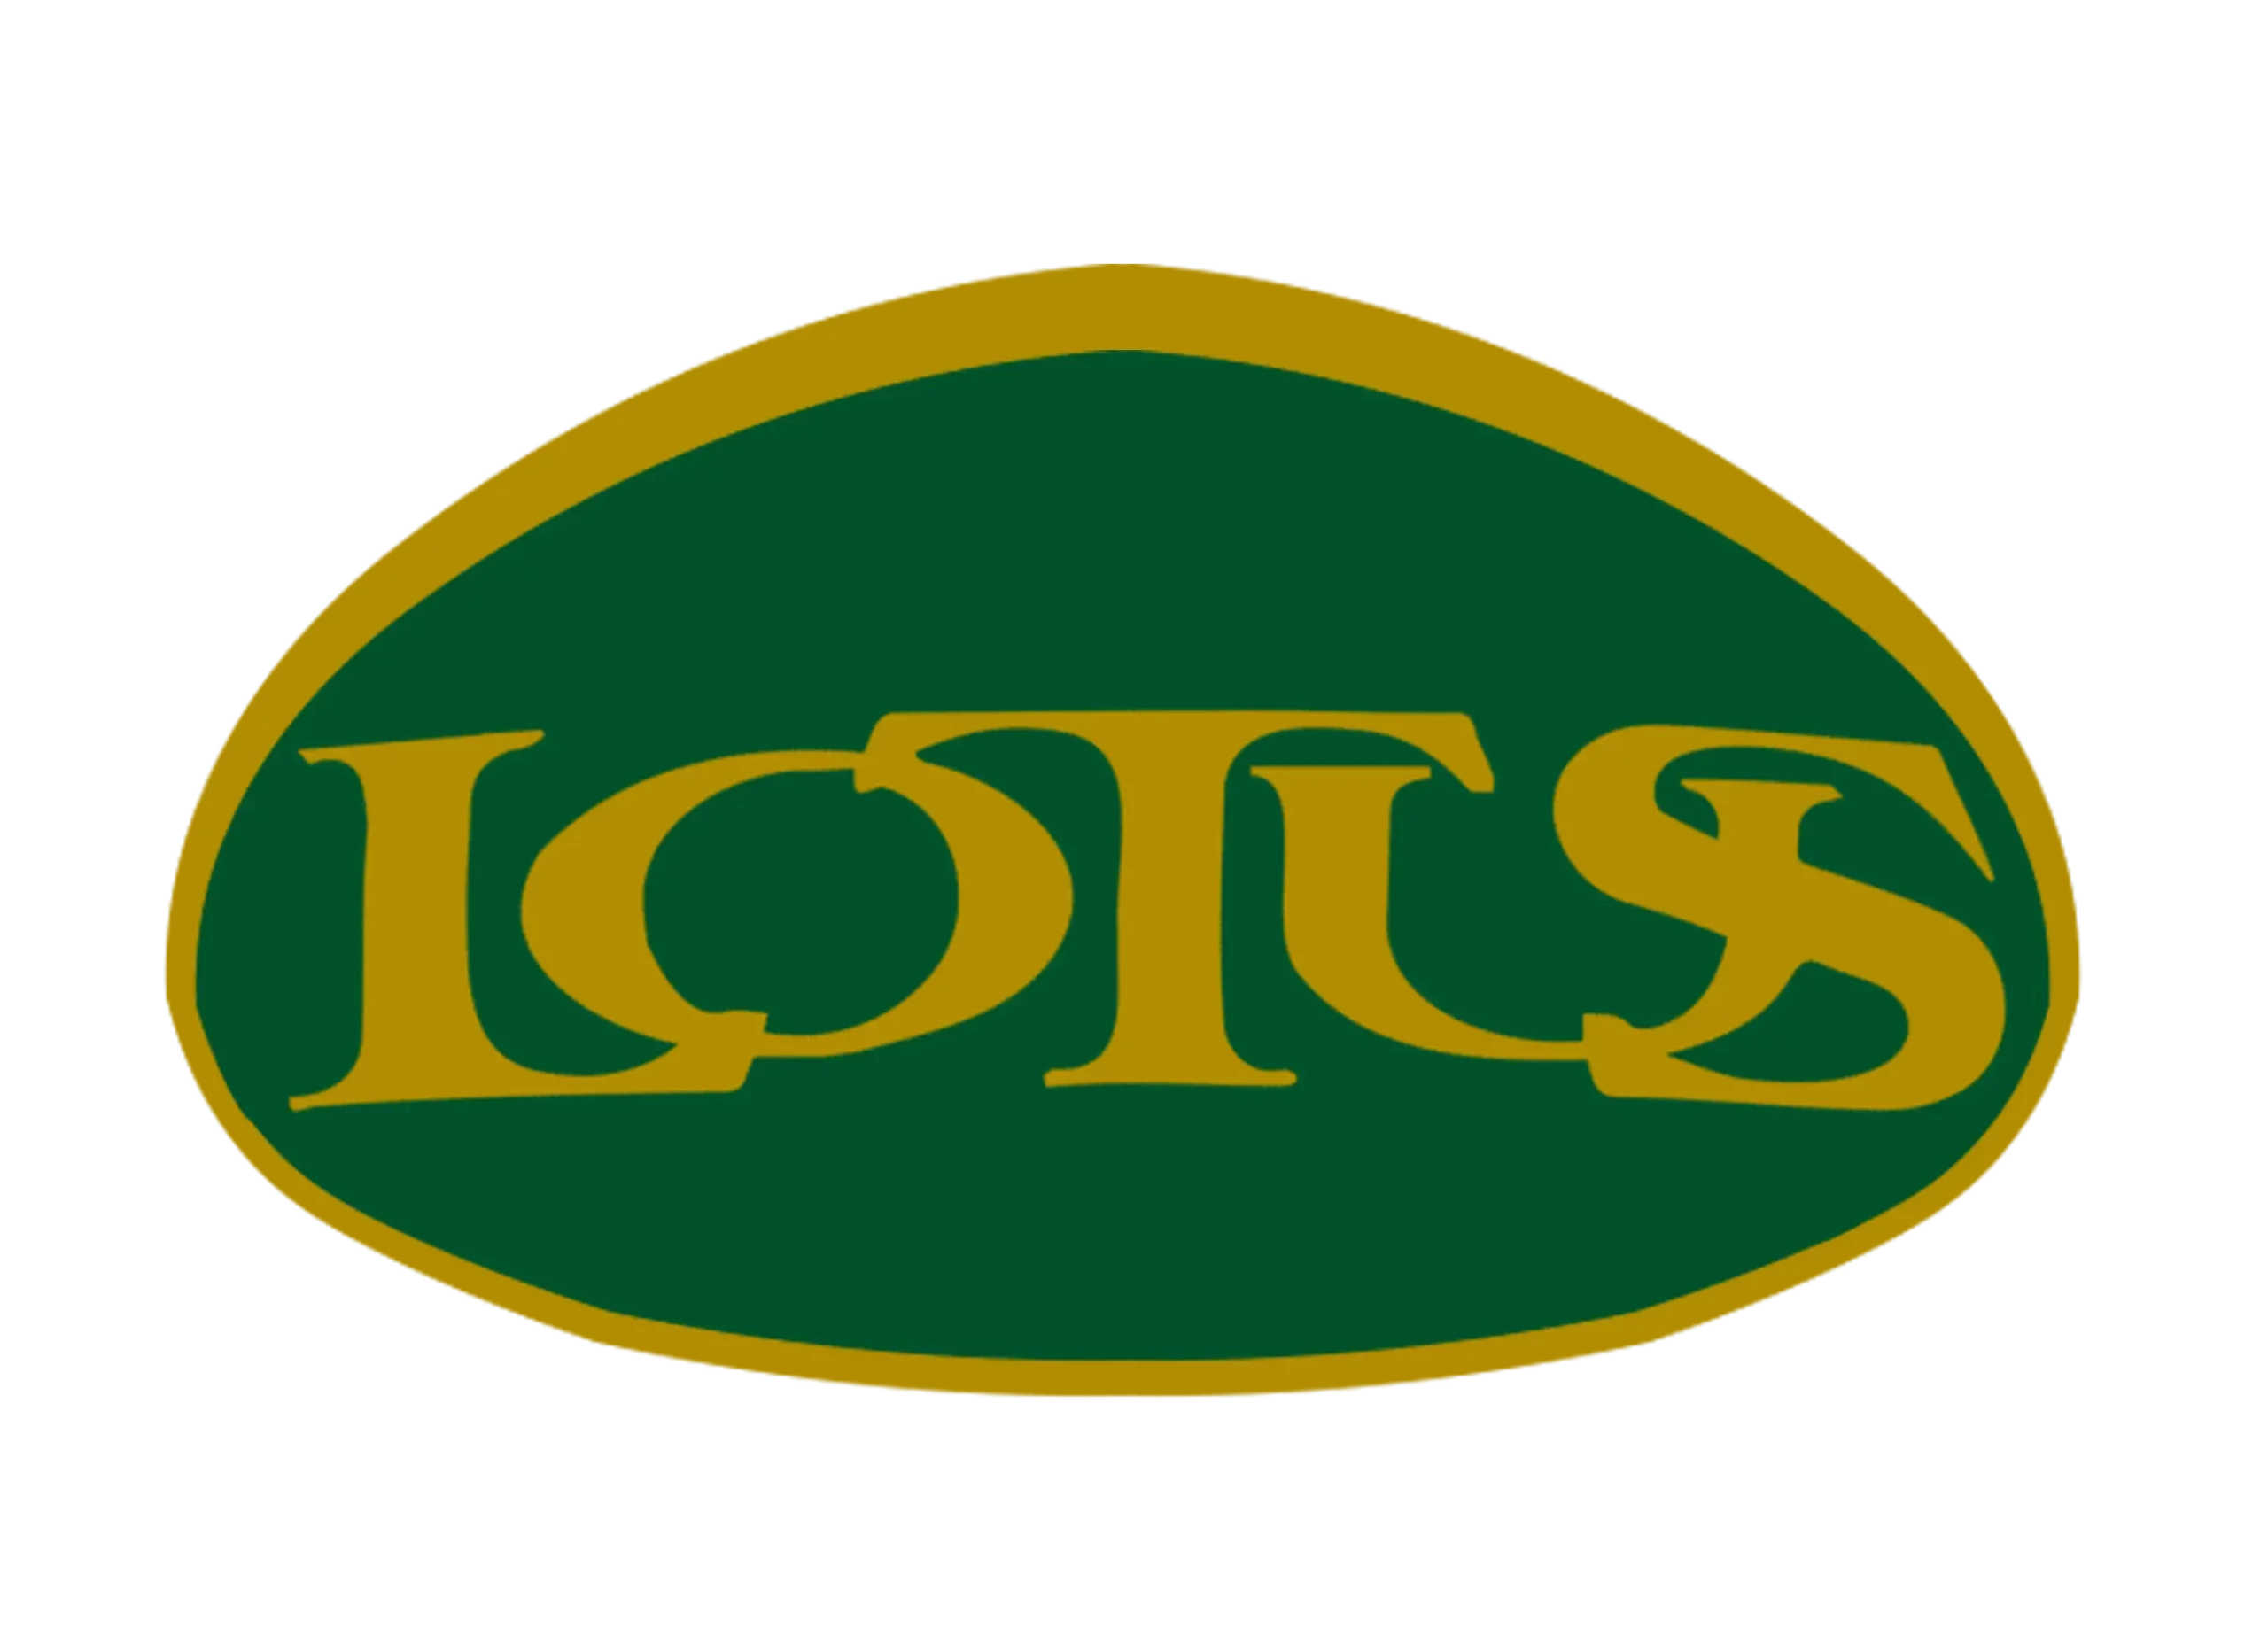 Lotus logo 1984-1986